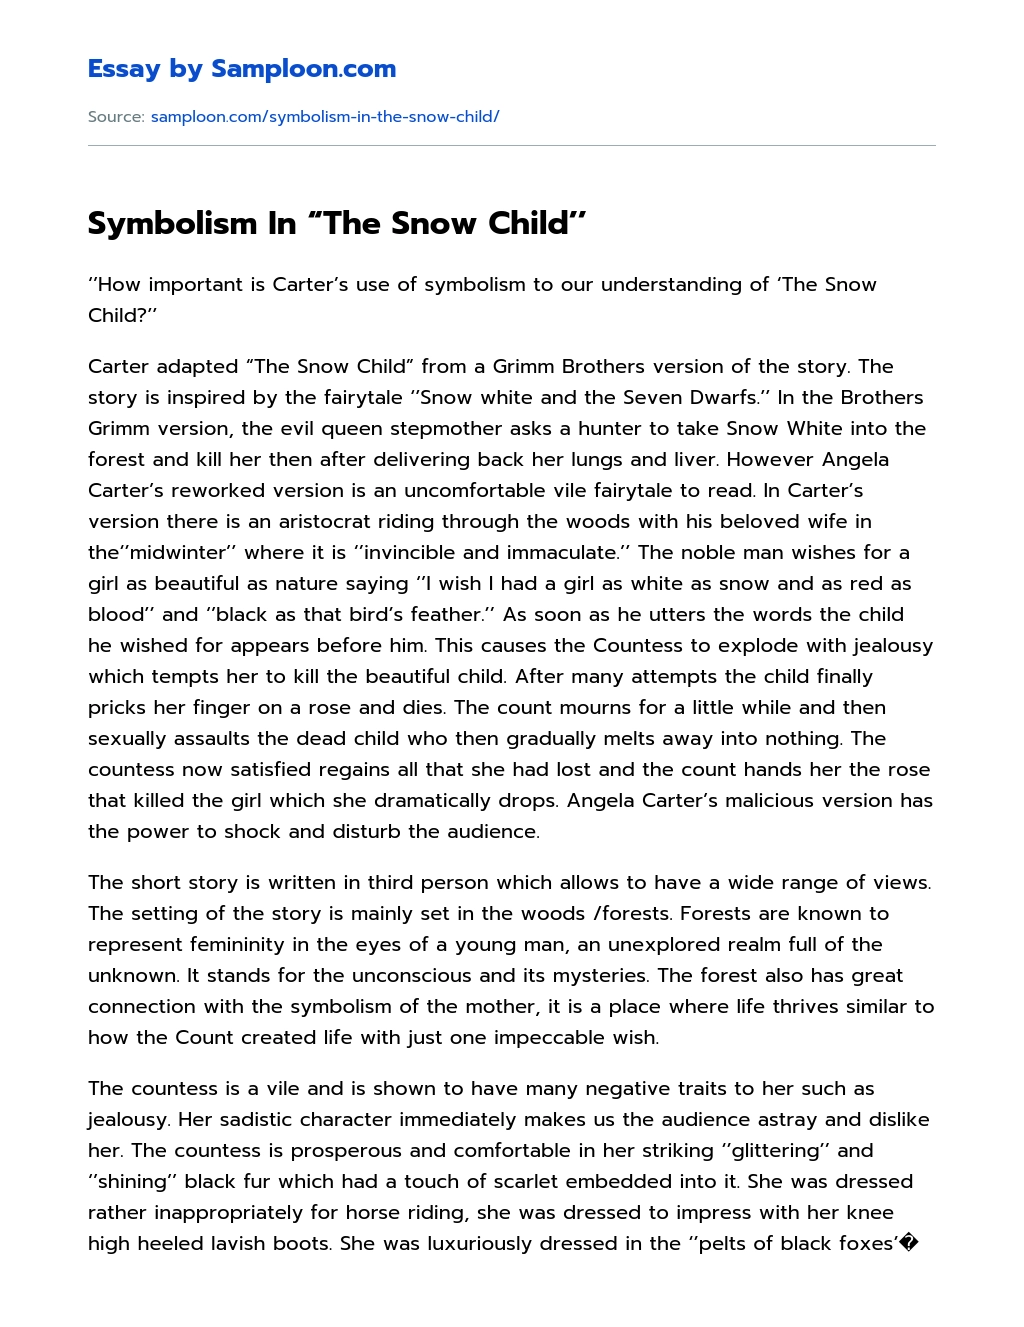 Symbolism In “The Snow Child’’ essay